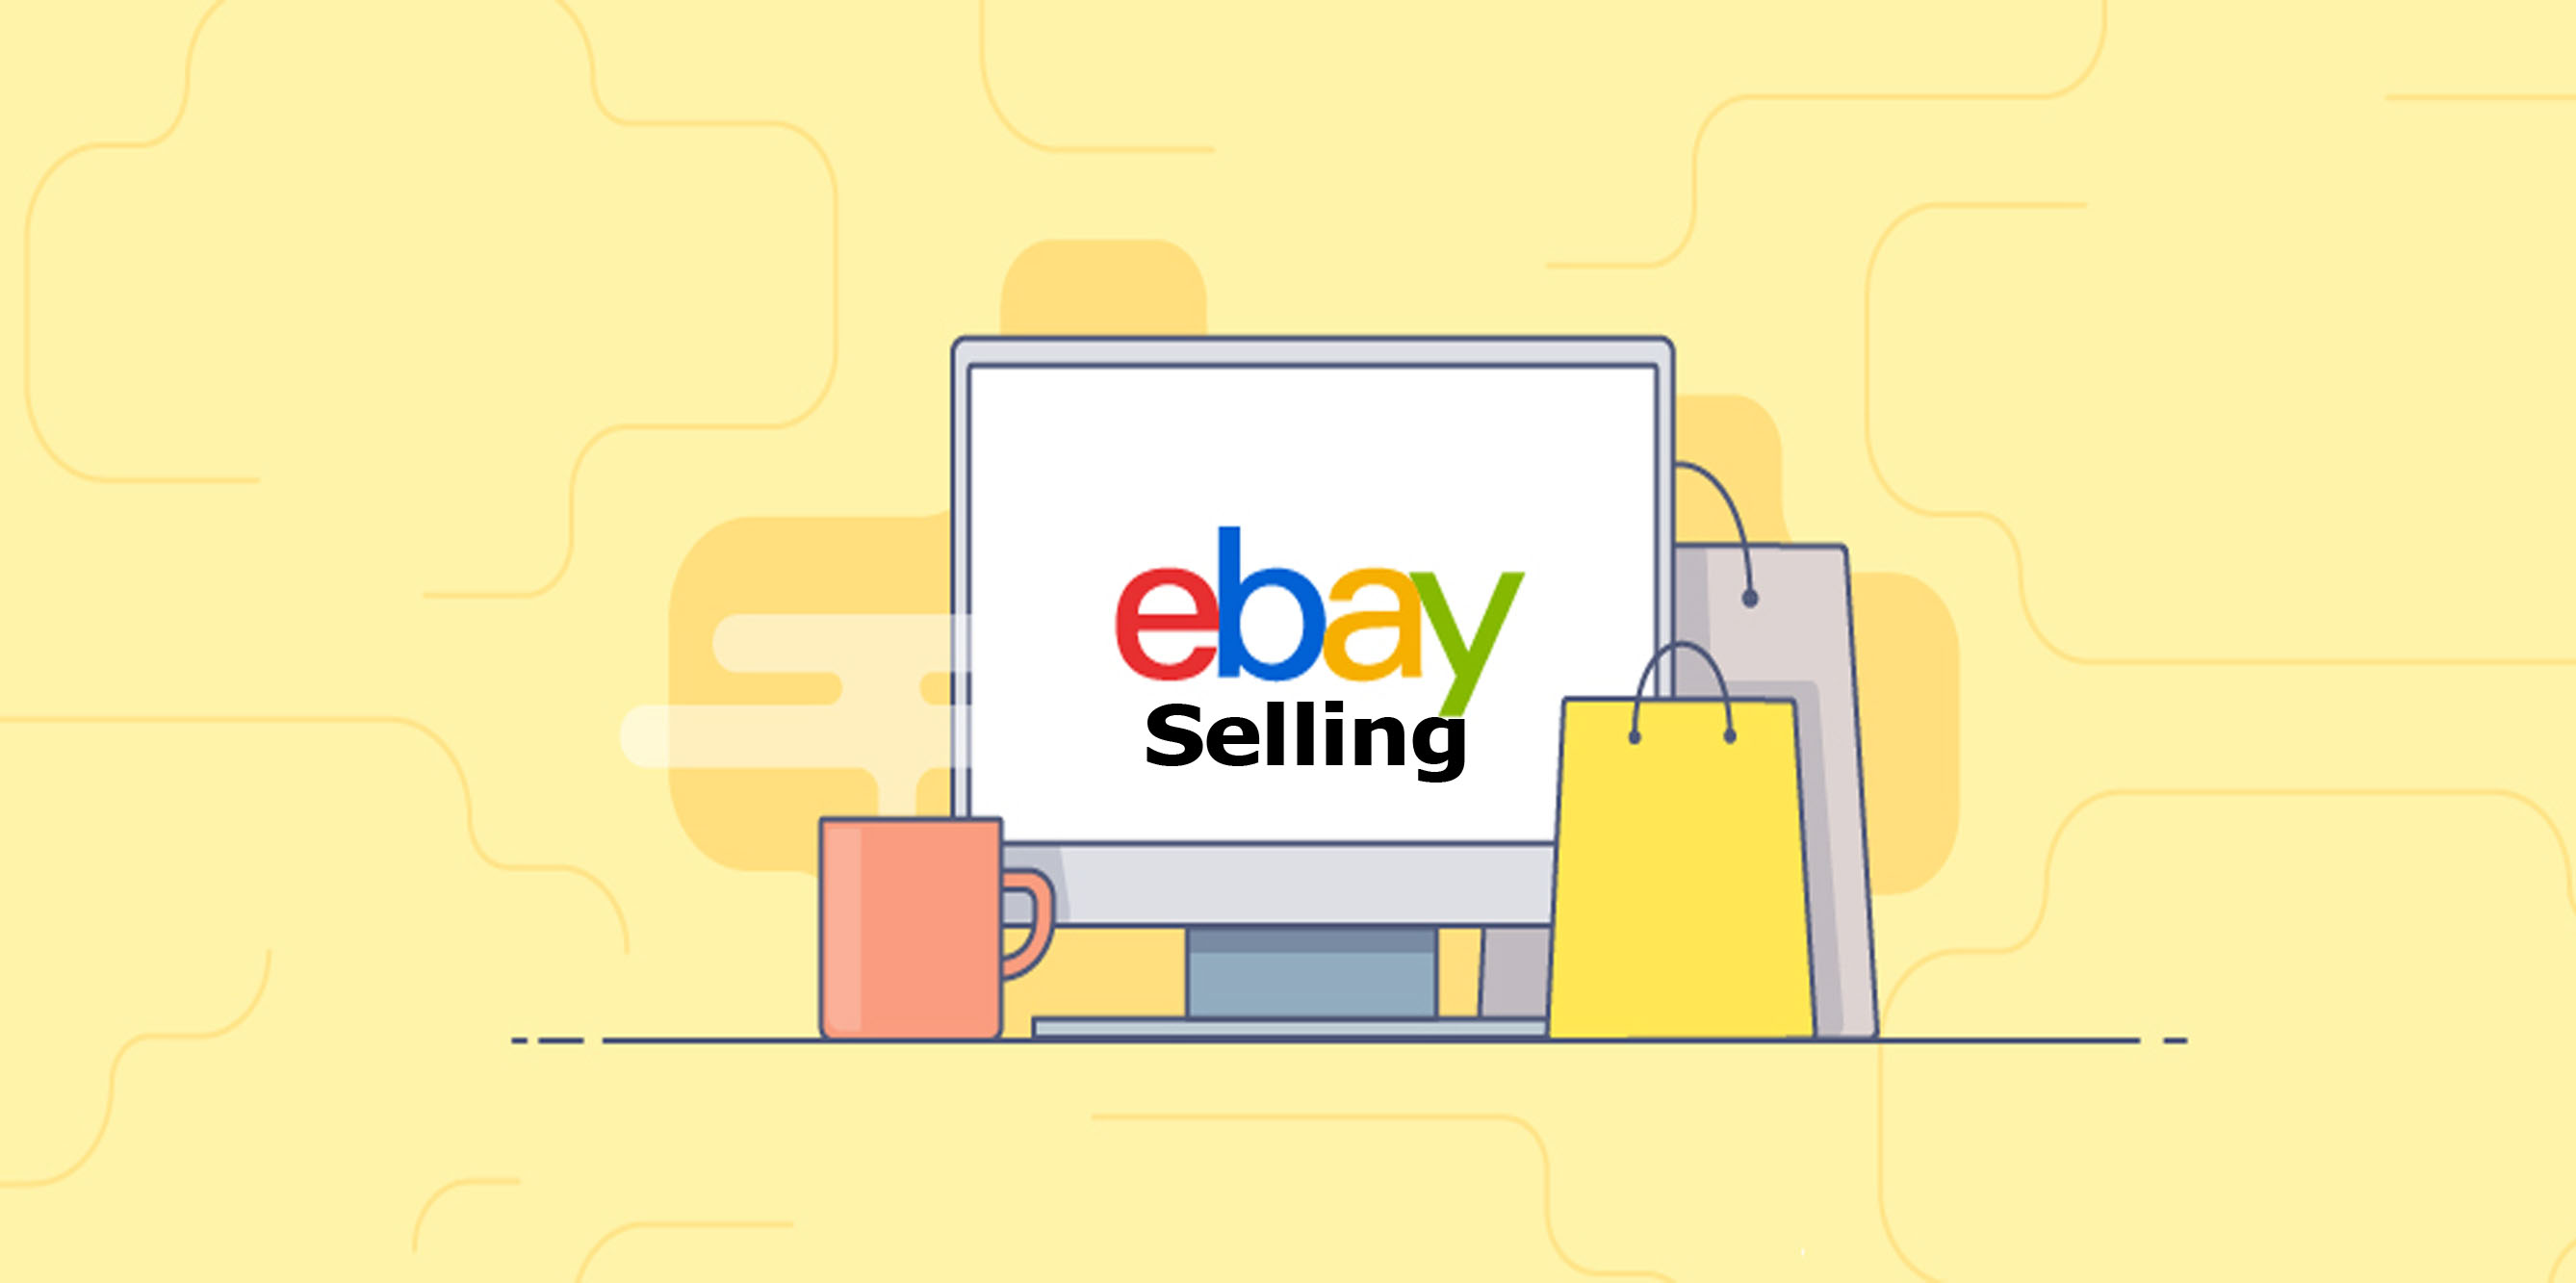 eBay Selling - eBay Online Shopping